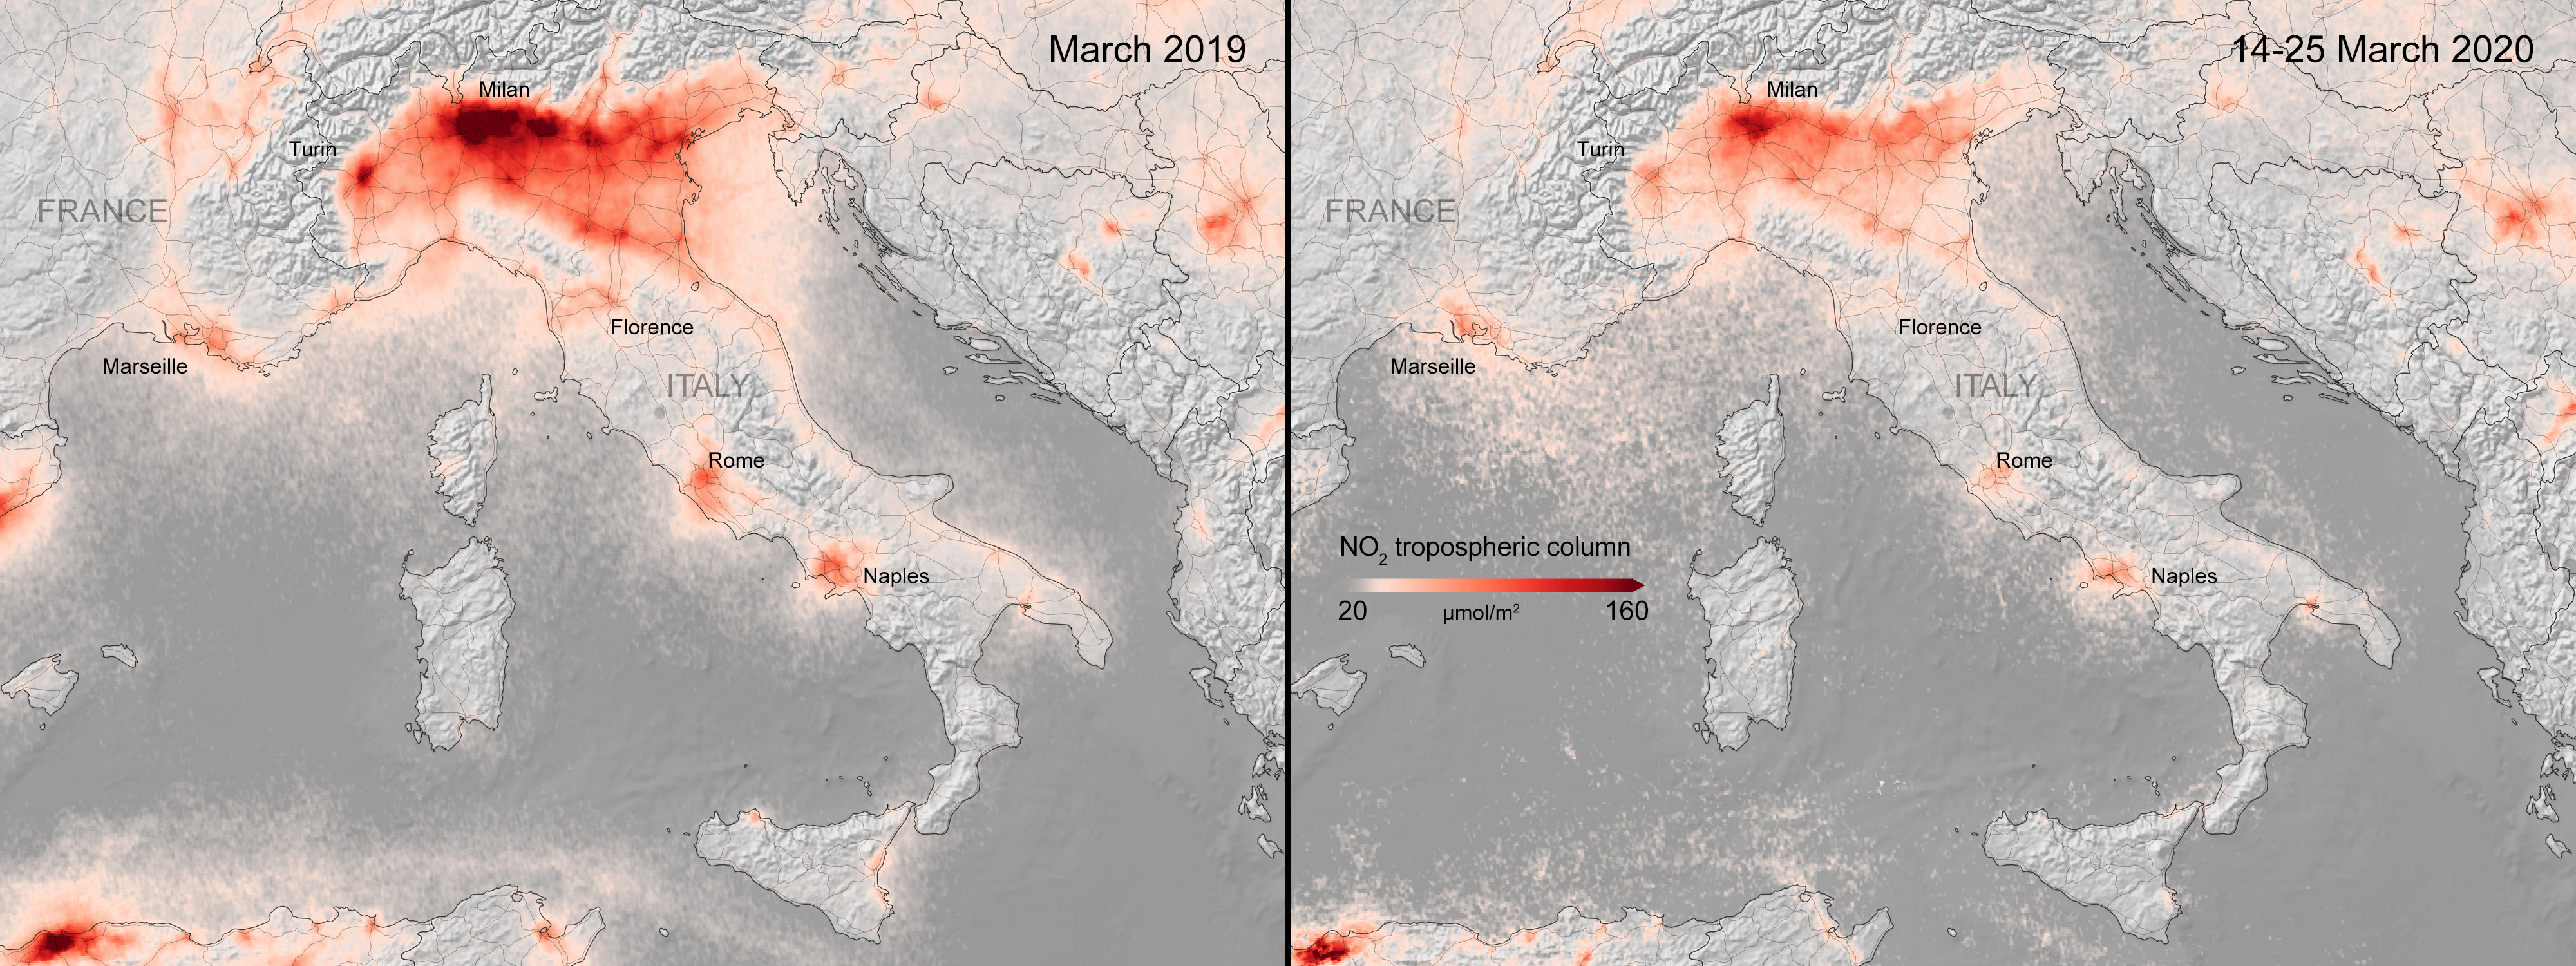 Как изменилось качество воздуха над Европой из-за коронавируса: спутниковые фото